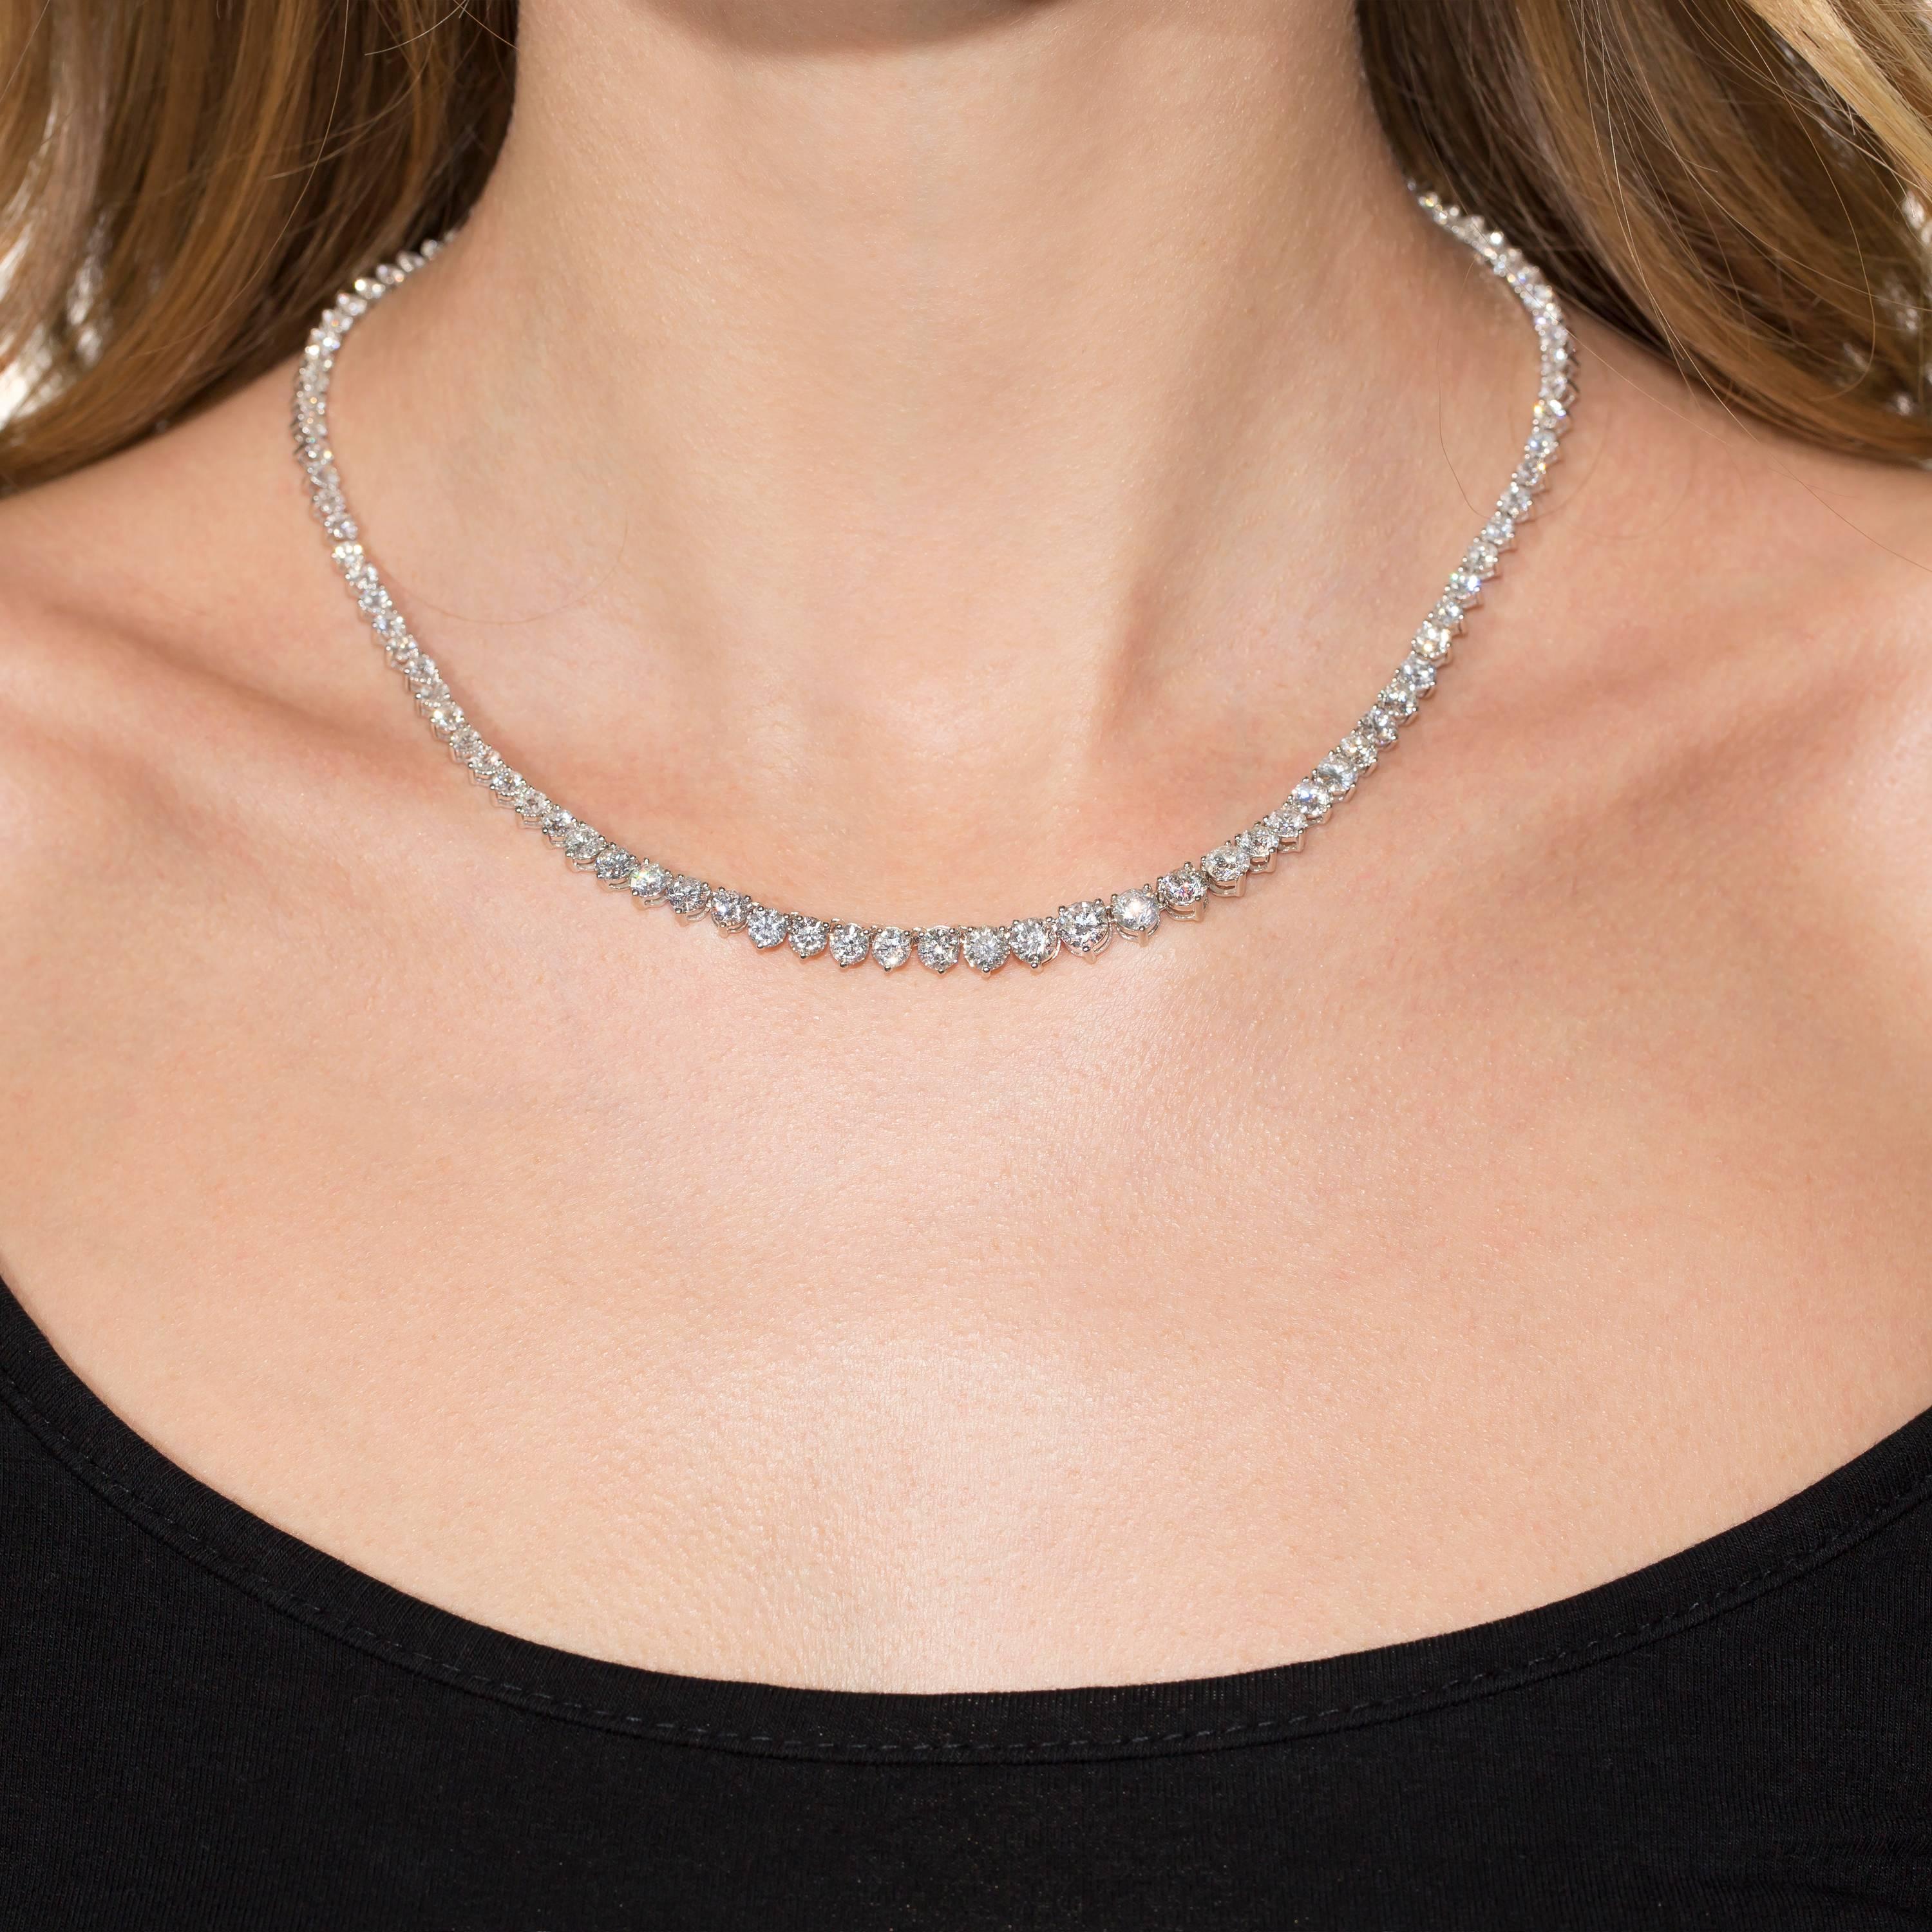 10 carat diamond necklace